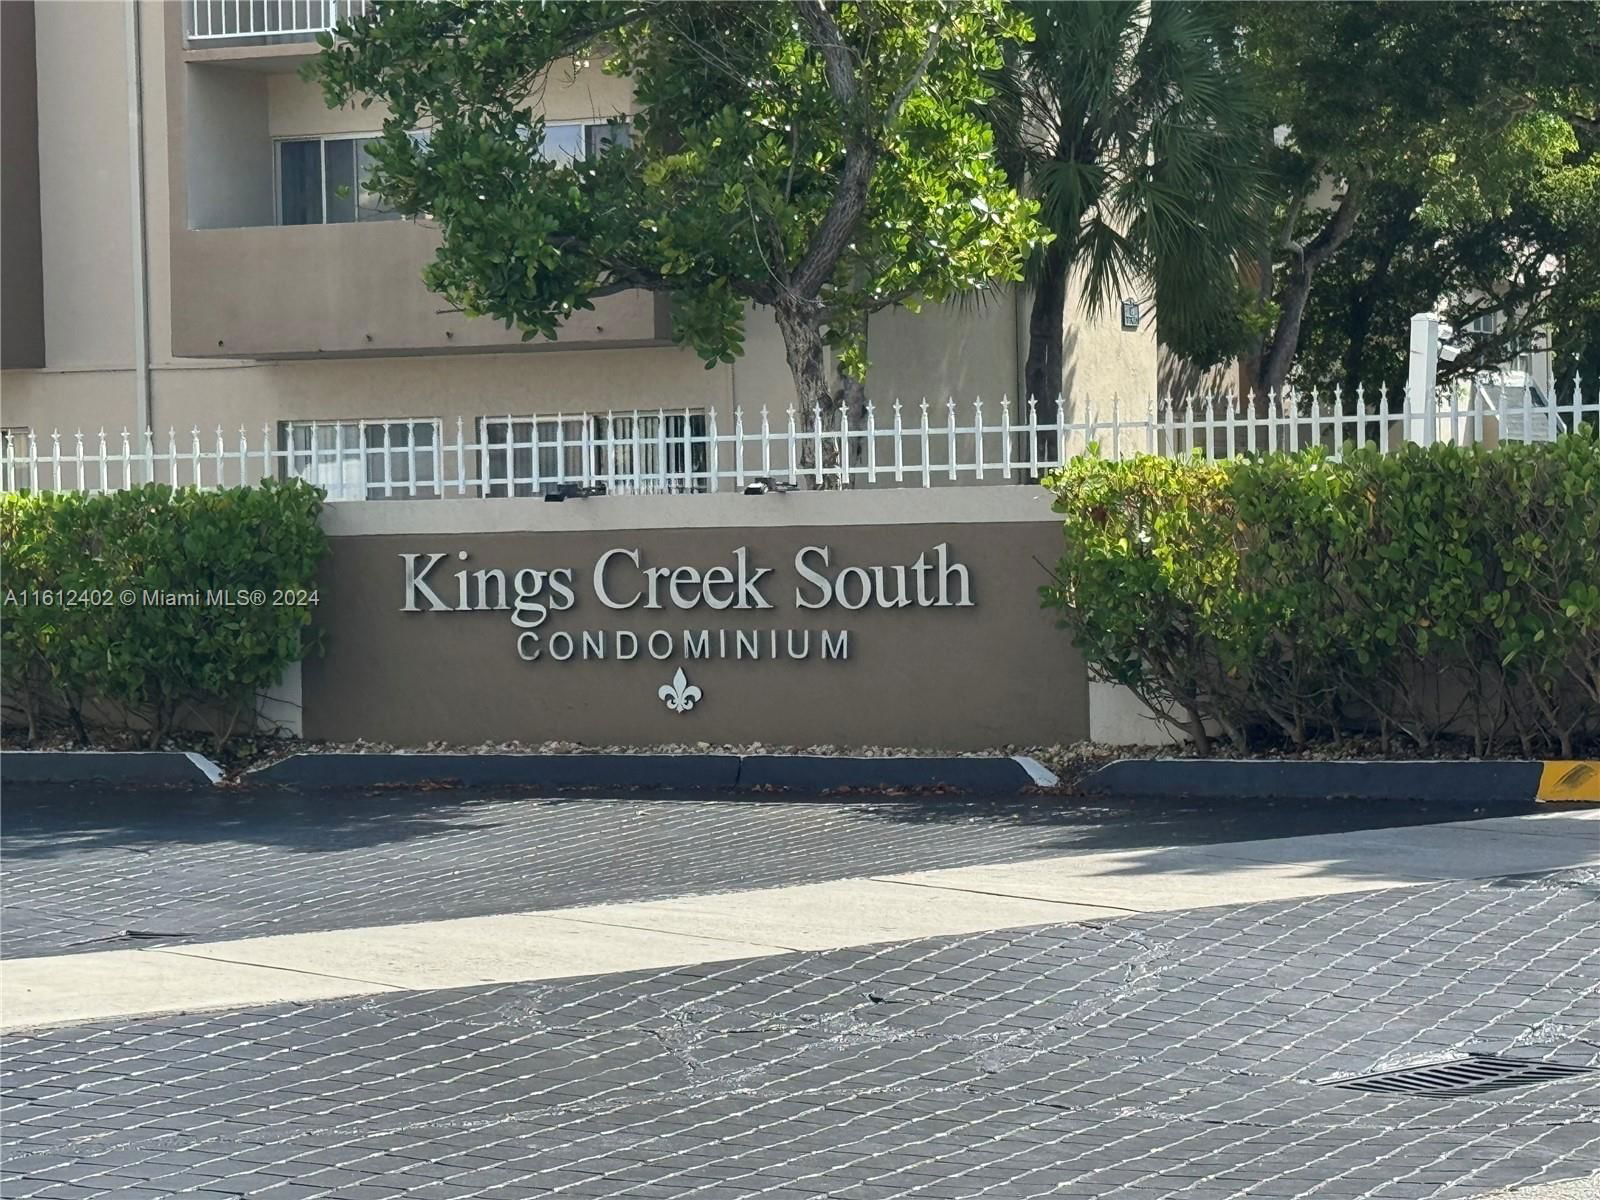 Real estate property located at 7765 86th St F2-110, Miami-Dade County, KINGS CREEK SO CONDO, Miami, FL